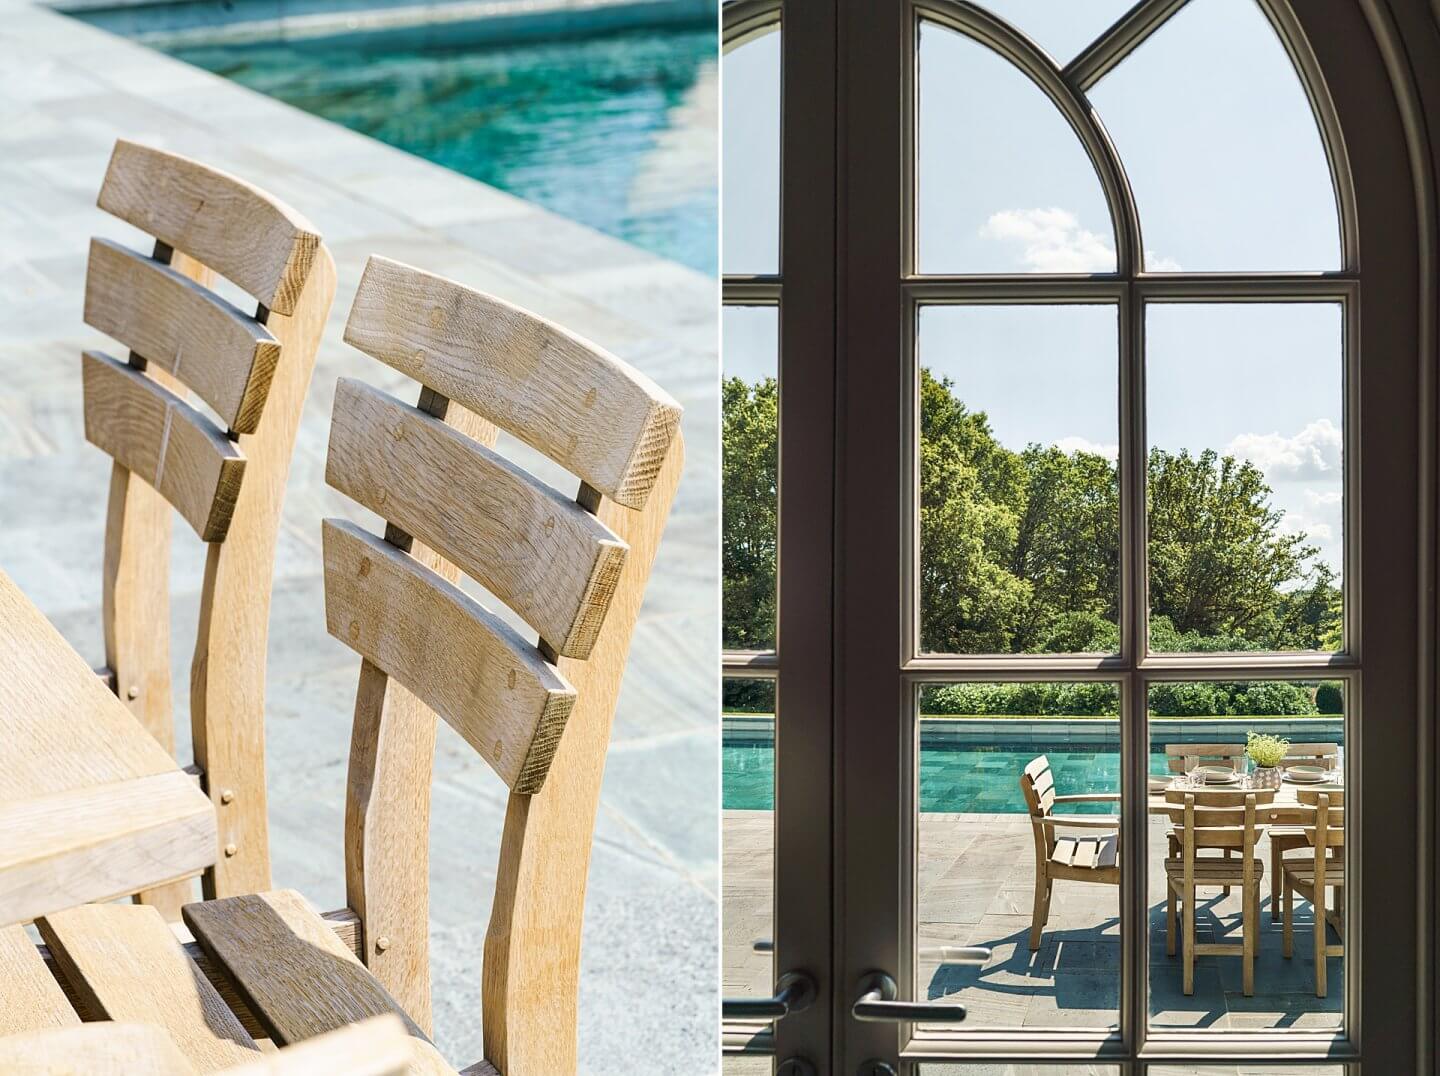 Gaze Burvill wooden dining set by a poolside in midsummer outdoor living garden photographer